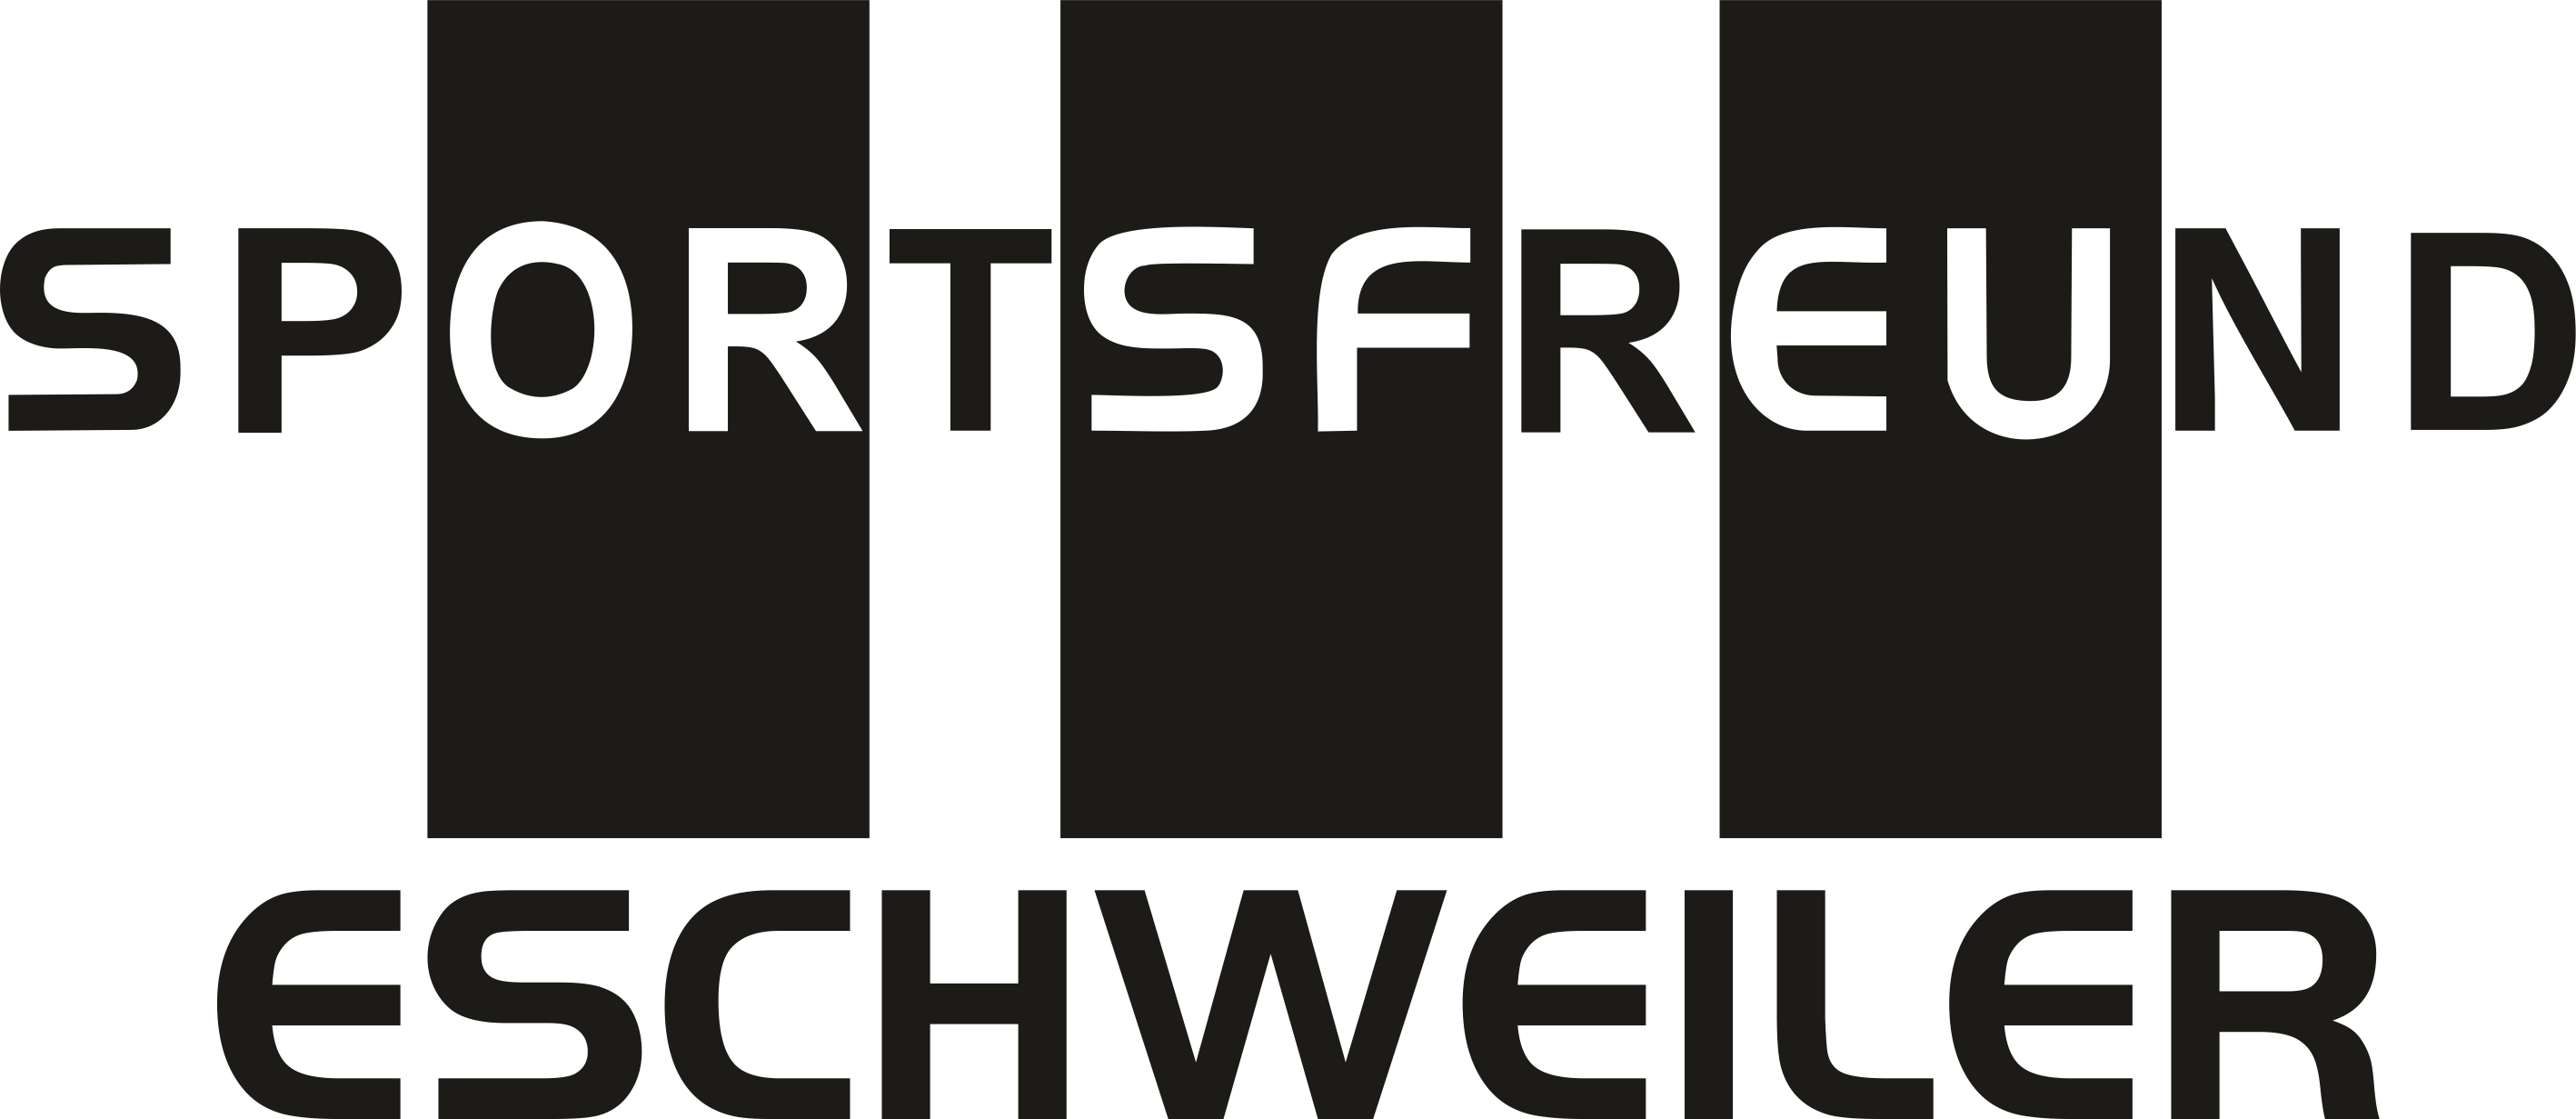 Burtscheider TV Aachen Logo 2